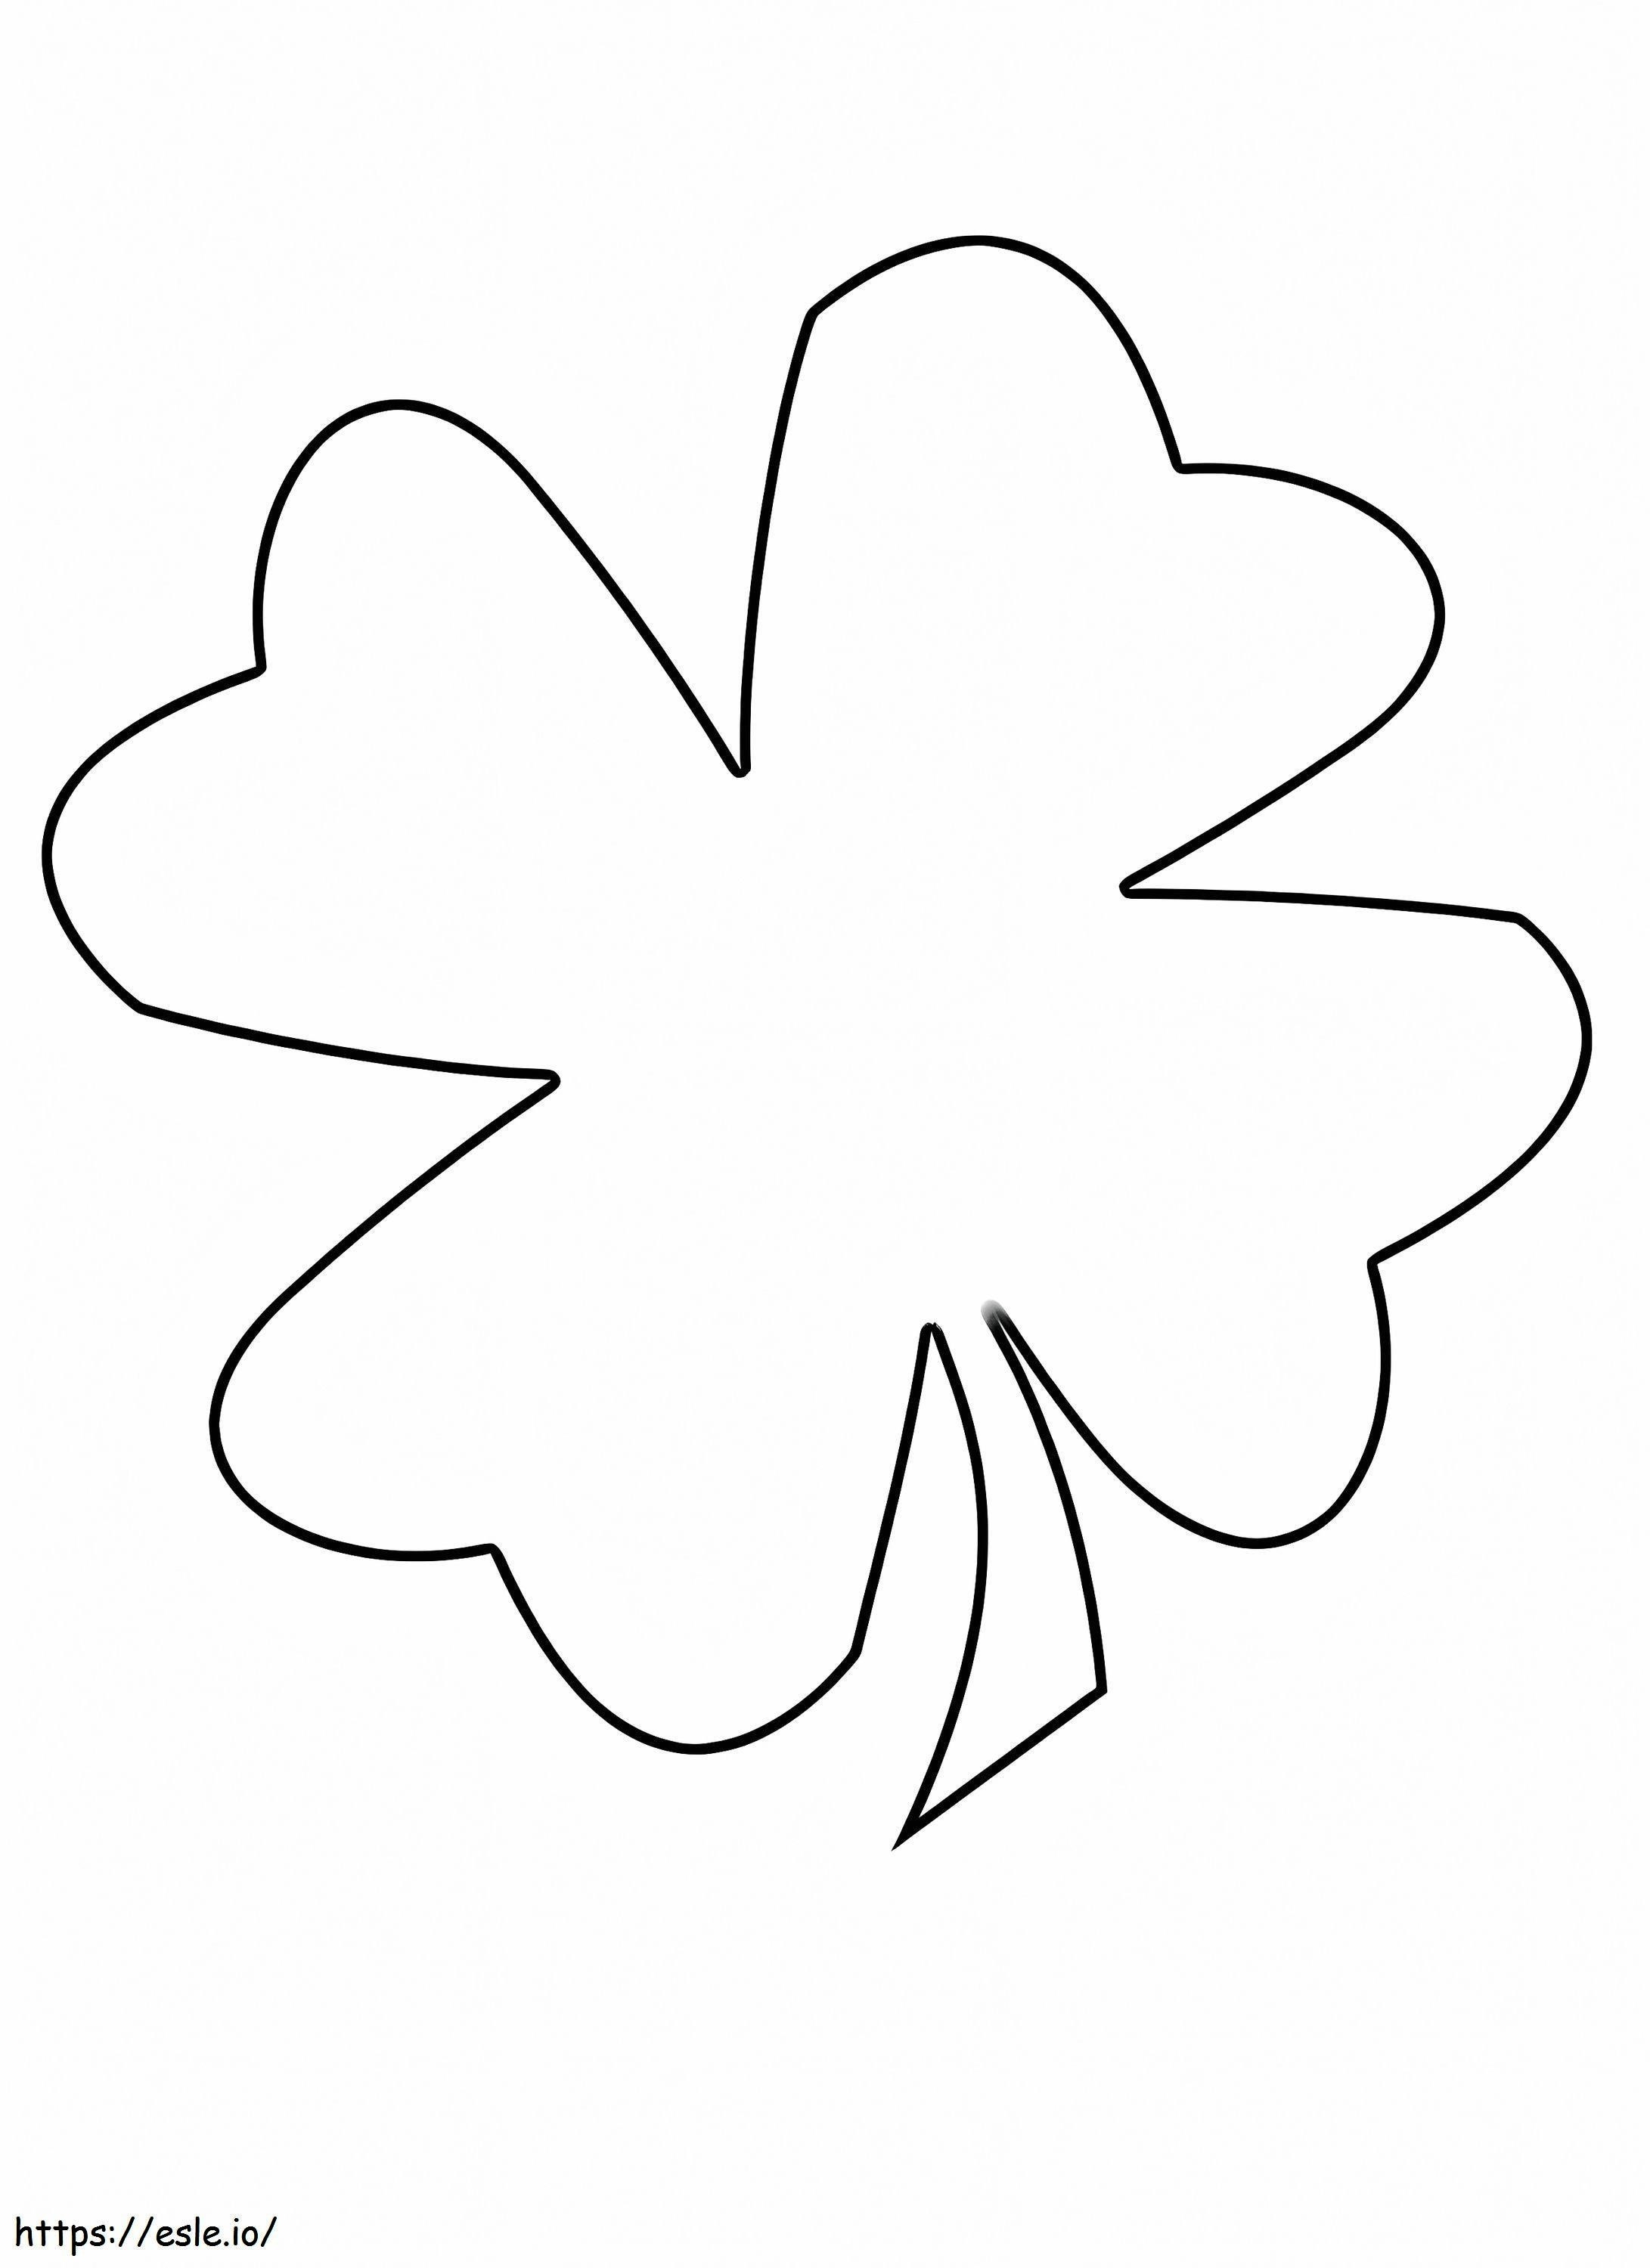 Coloriage Trèfle à quatre feuilles 2 à imprimer dessin